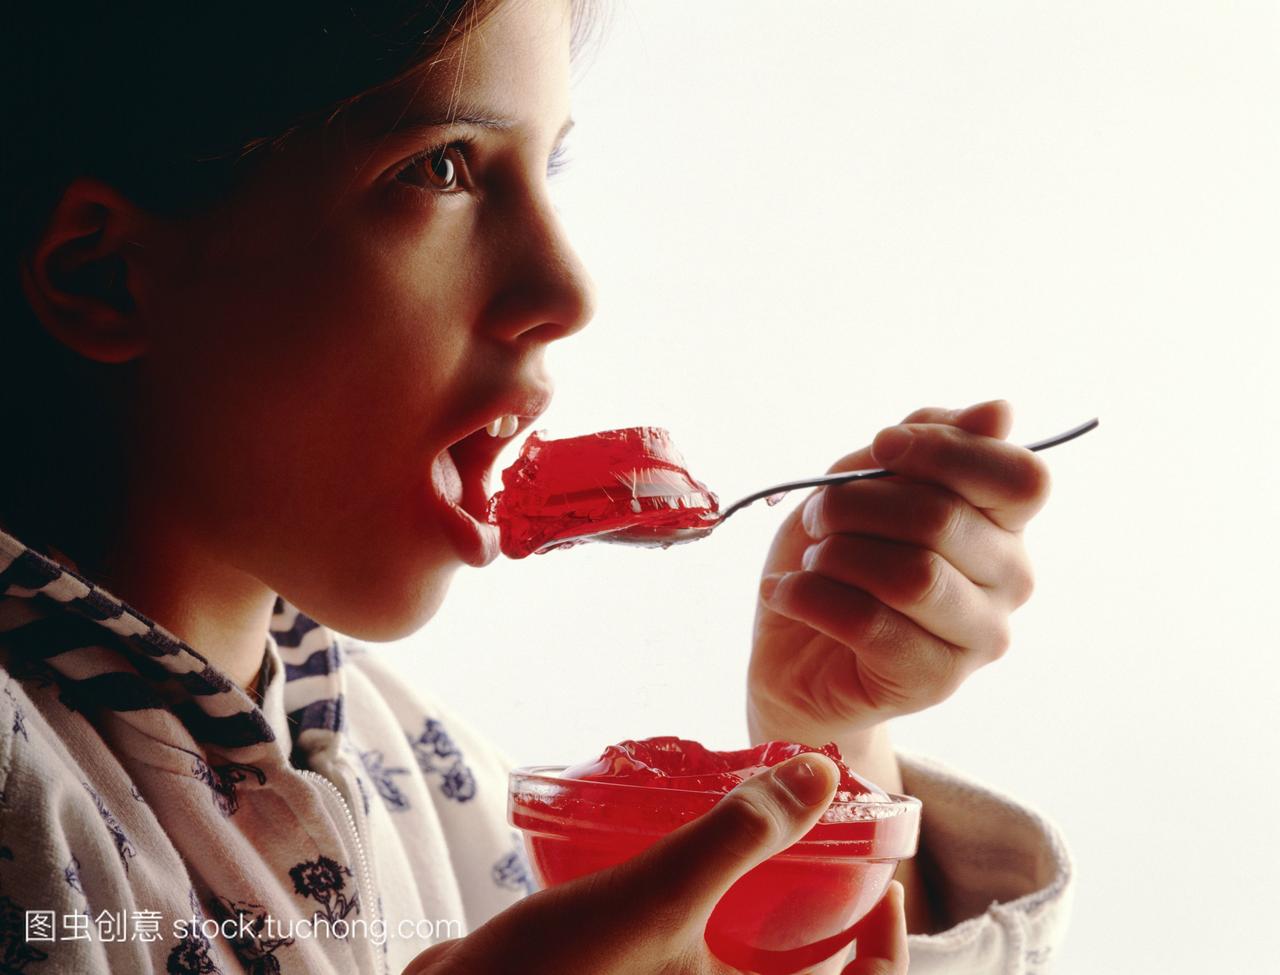 模型发布。儿童营养。小女孩吃一勺红色的果冻